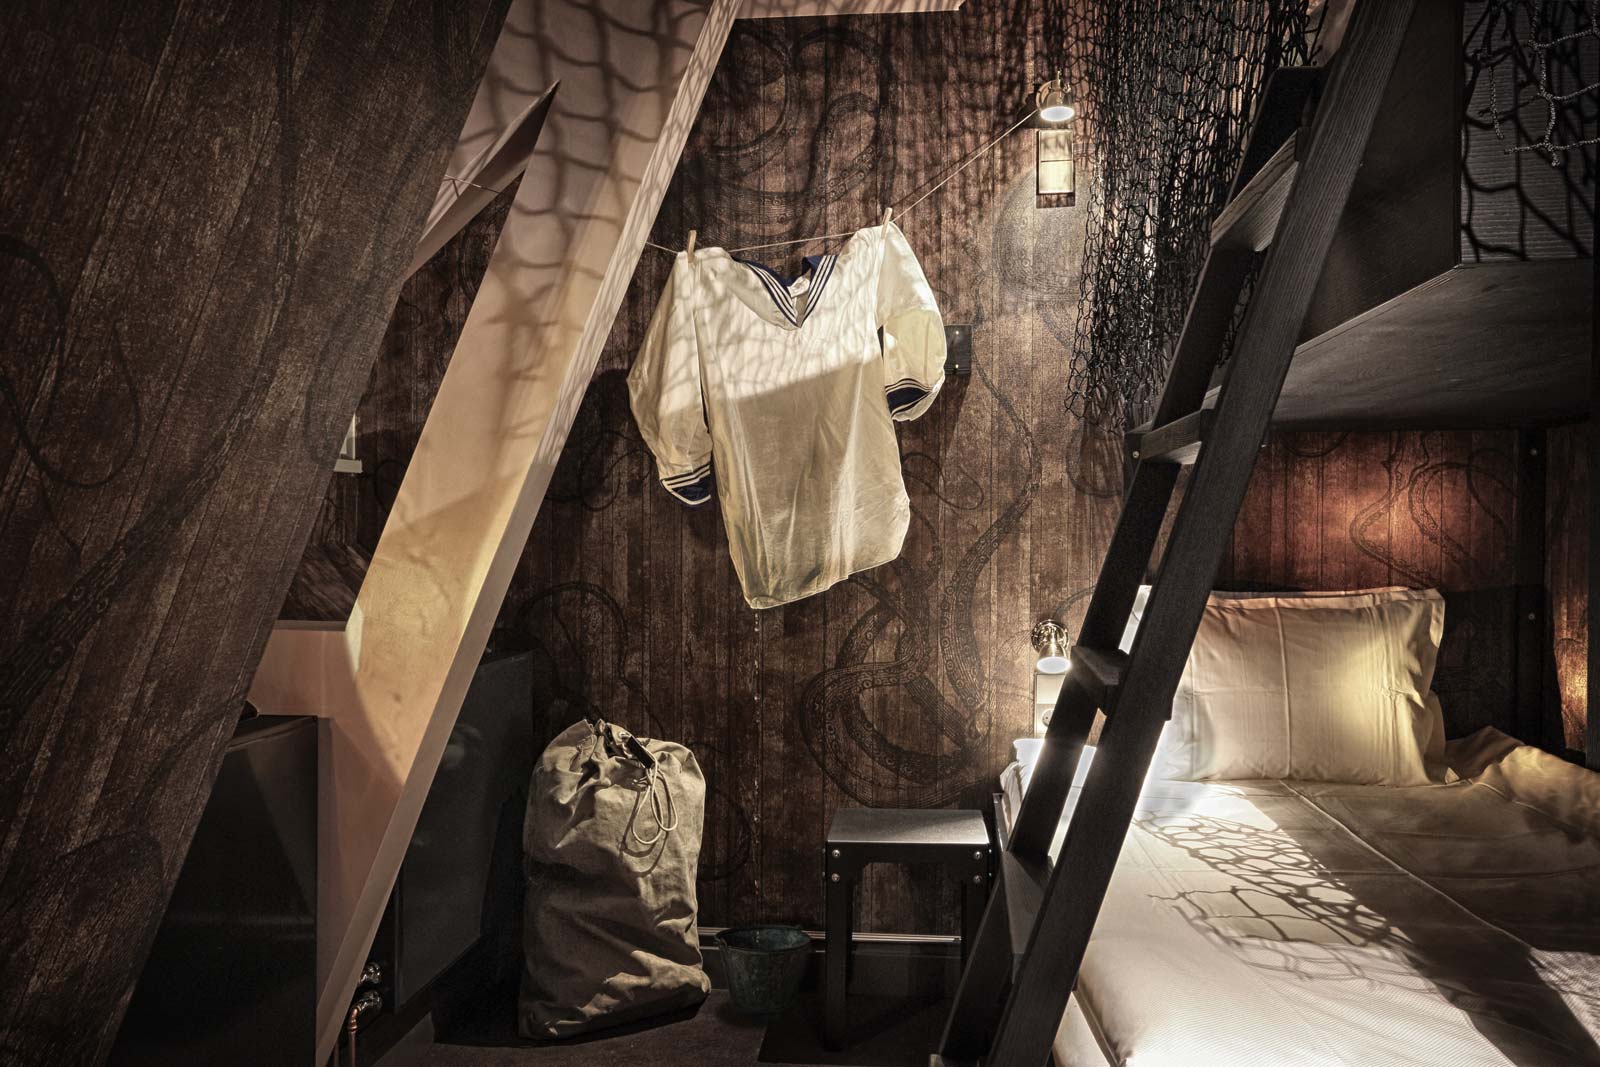 Kosy hörn i hotellrum med upphängd vit skjorta, en stege som leder till en loft-säng under ett fönster som släpper in mjukt ljus.